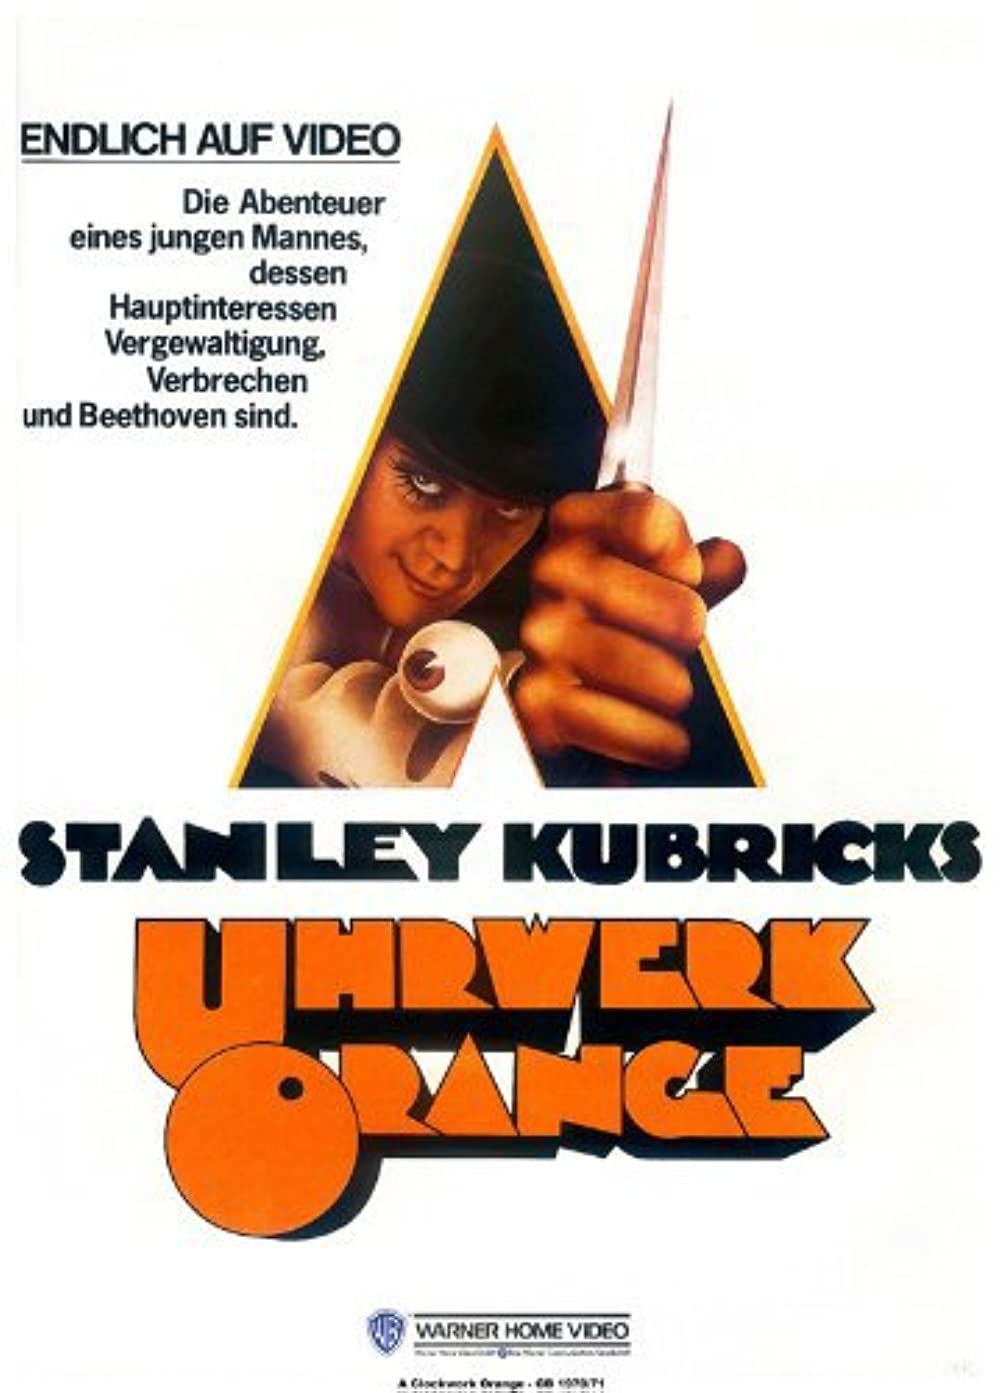 Filmbeschreibung zu A Clockwork Orange